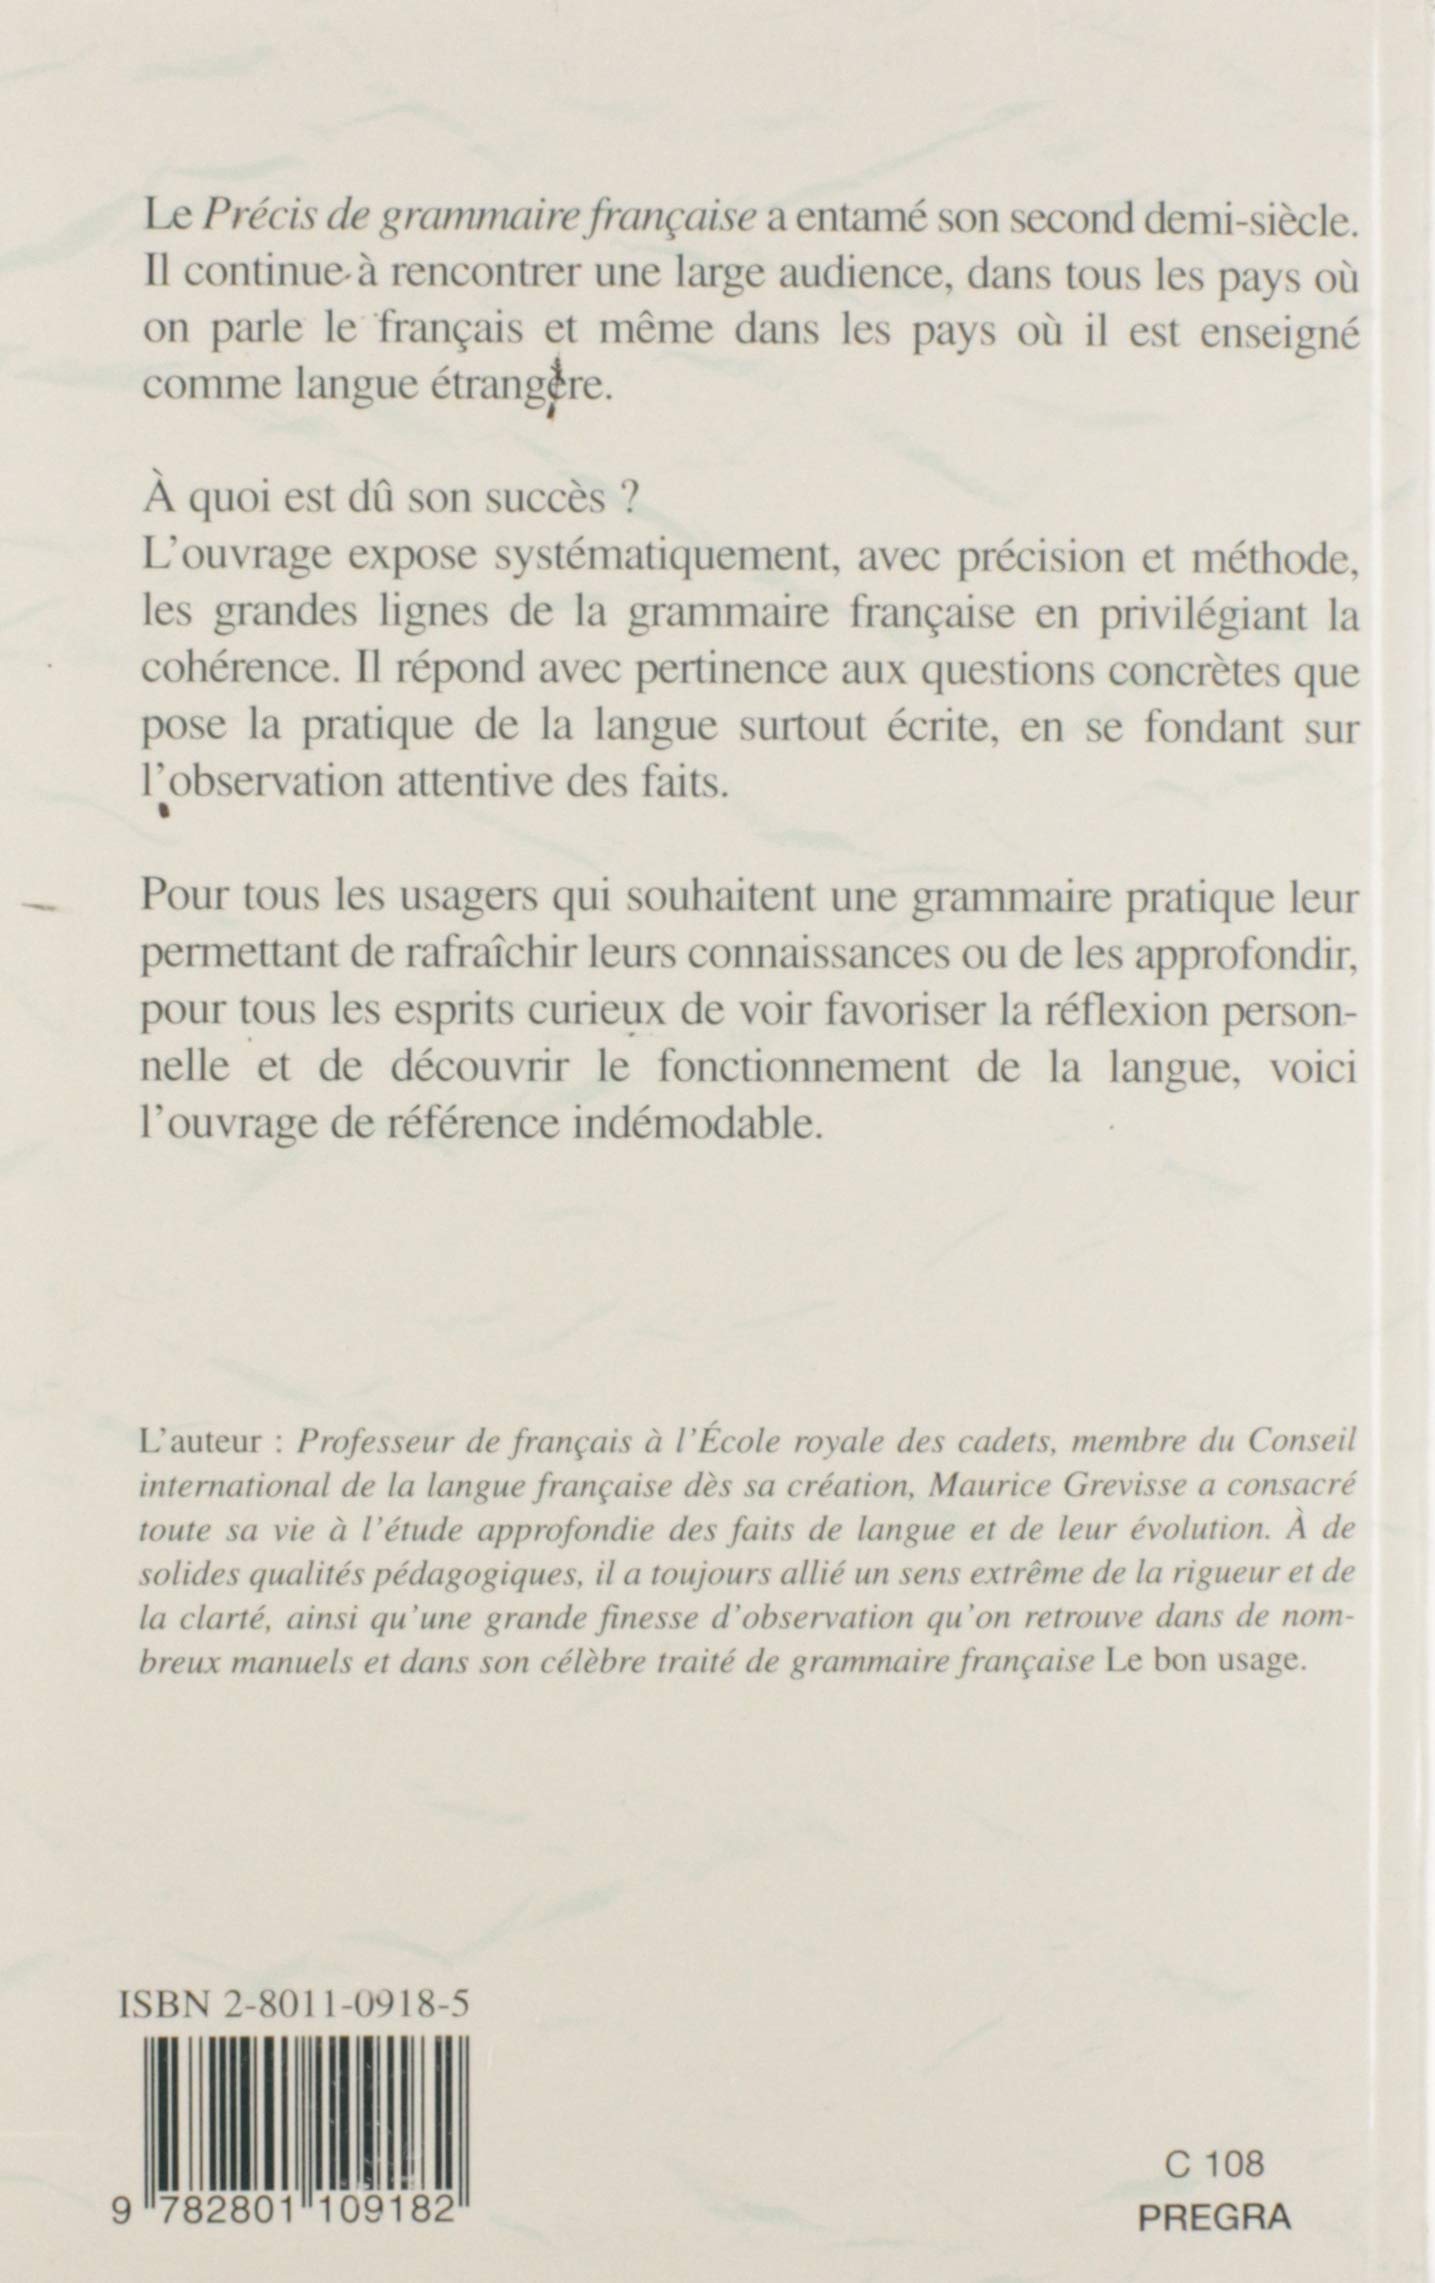 Précis de grammaire française (Maurice Grevisse)